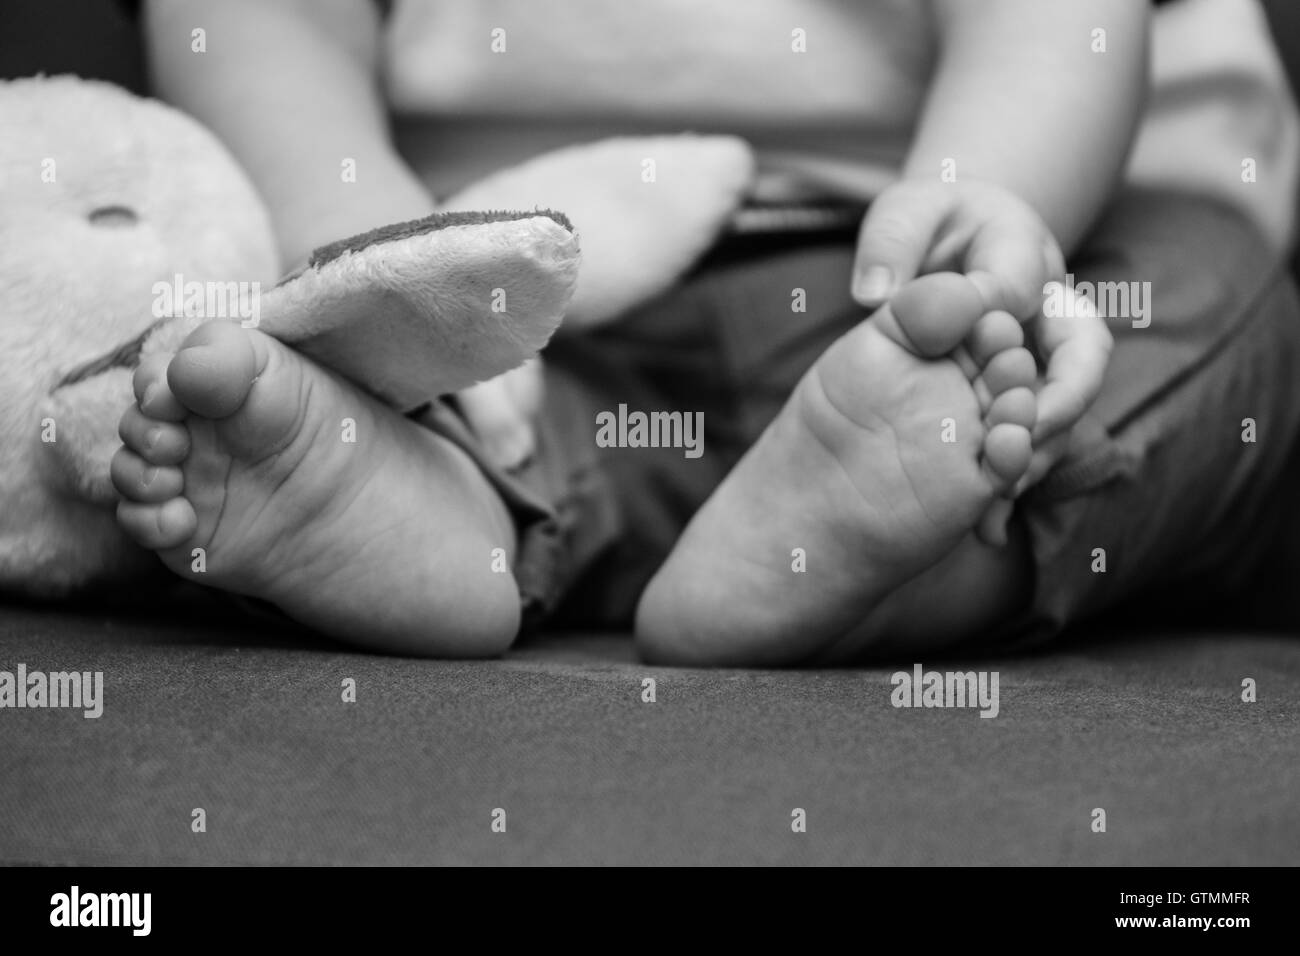 Adorable tiny baby feet. Stock Photo